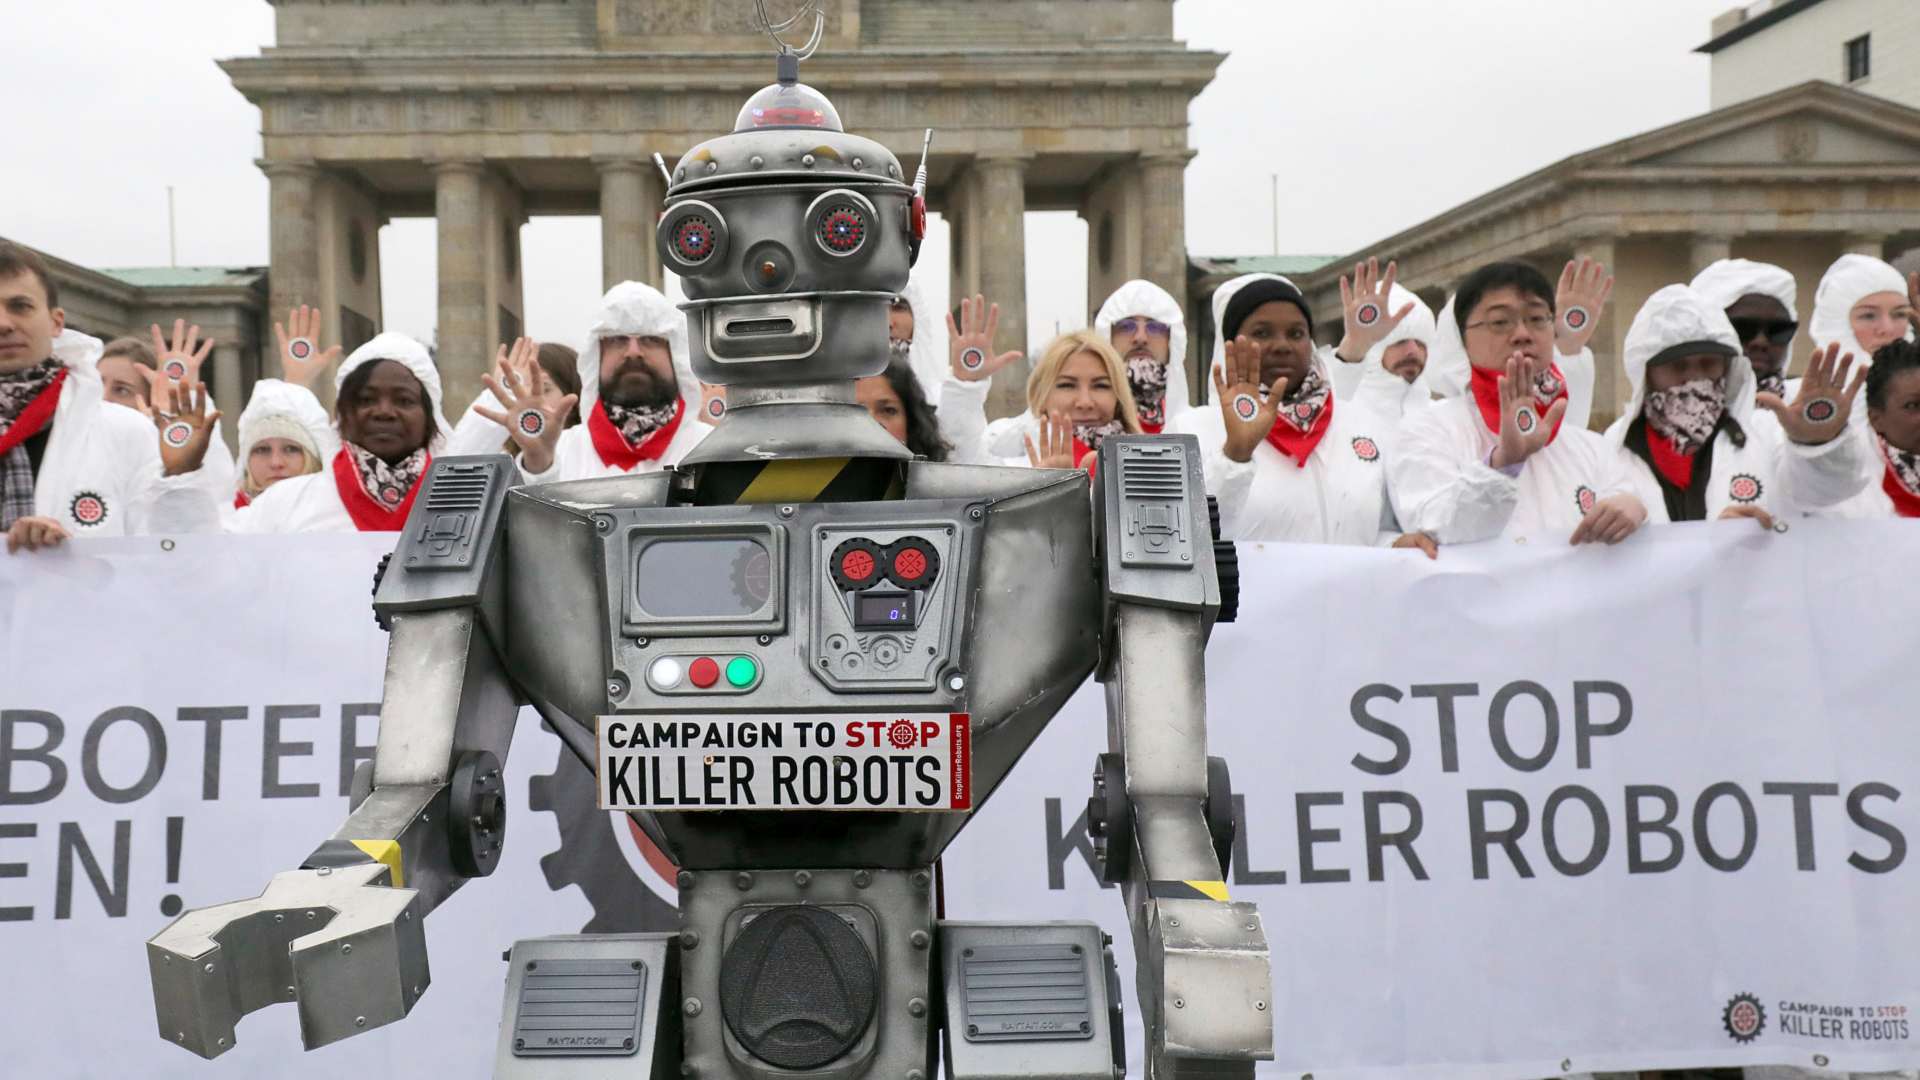 Detengamos a los robots asesinos antes de que existan